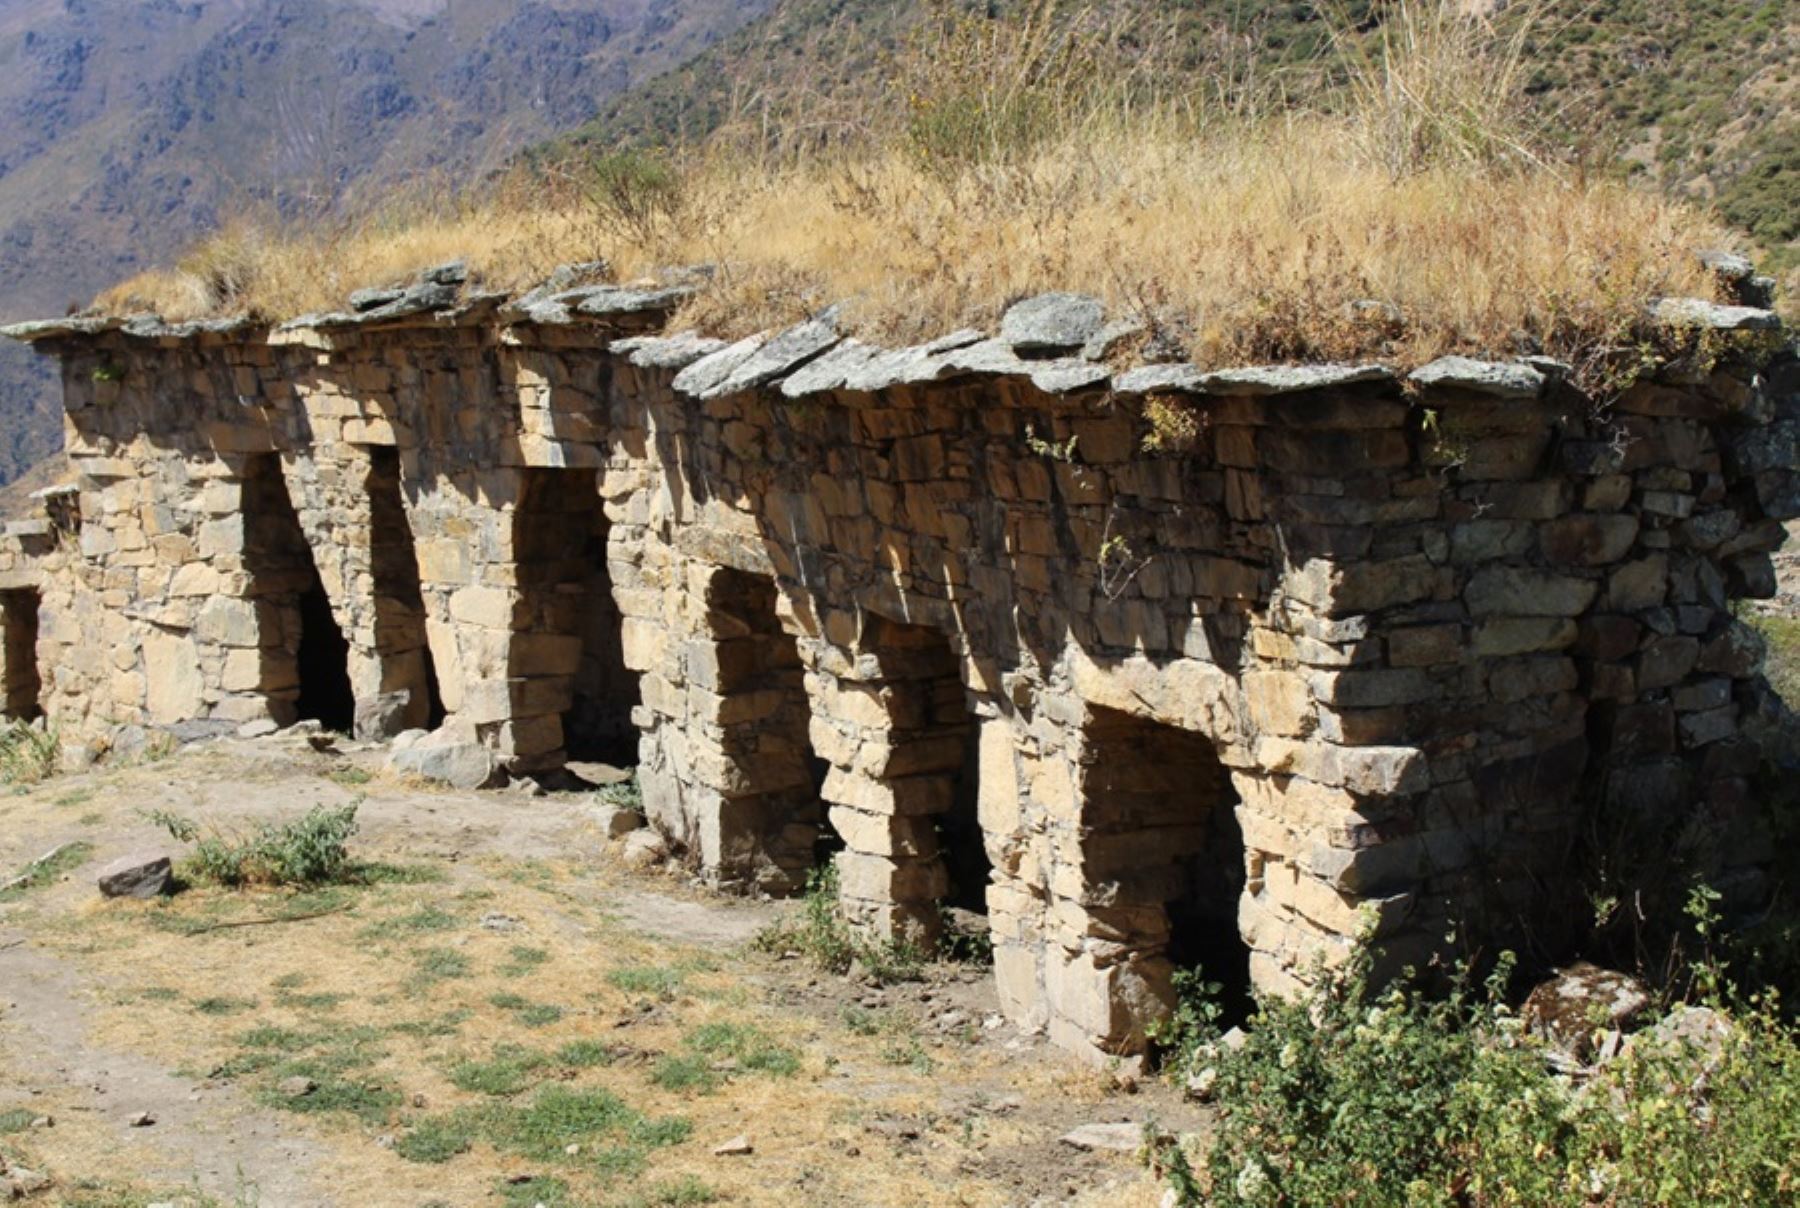 El sitio arqueológico Rúpak se localiza a 3,580 metros sobre el nivel del mar, en la cima de una montaña que forma parte de la comunidad campesina de San Salvador de Pampas que pertenece al distrito de Atavillos Bajo, en la sierra de la provincia de Huaral, en el departamento de Lima.